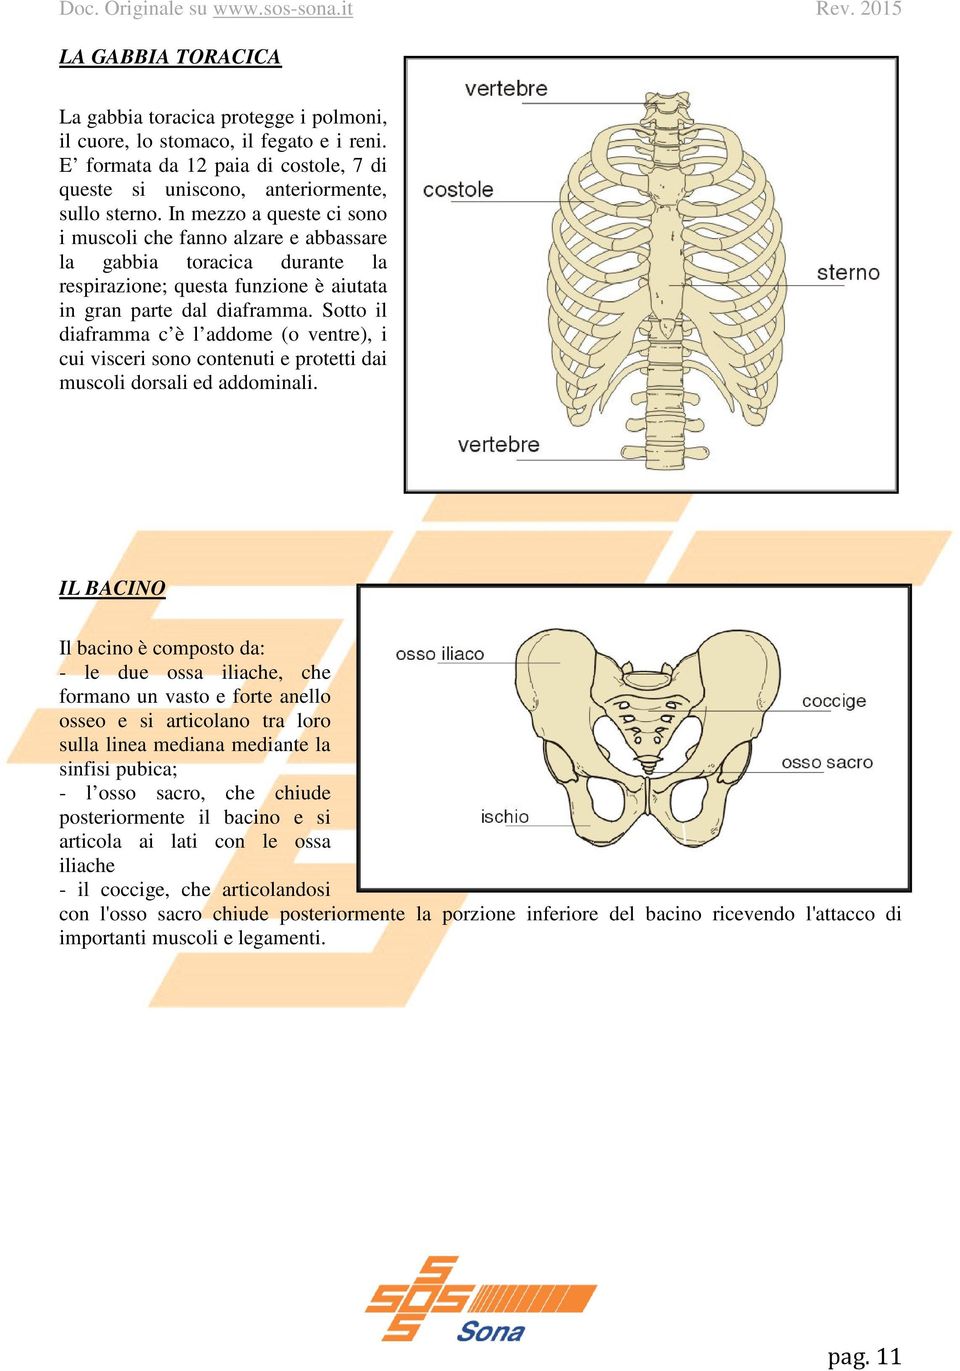 Sotto il diaframma c è l addome (o ventre), i cui visceri sono contenuti e protetti dai muscoli dorsali ed addominali.